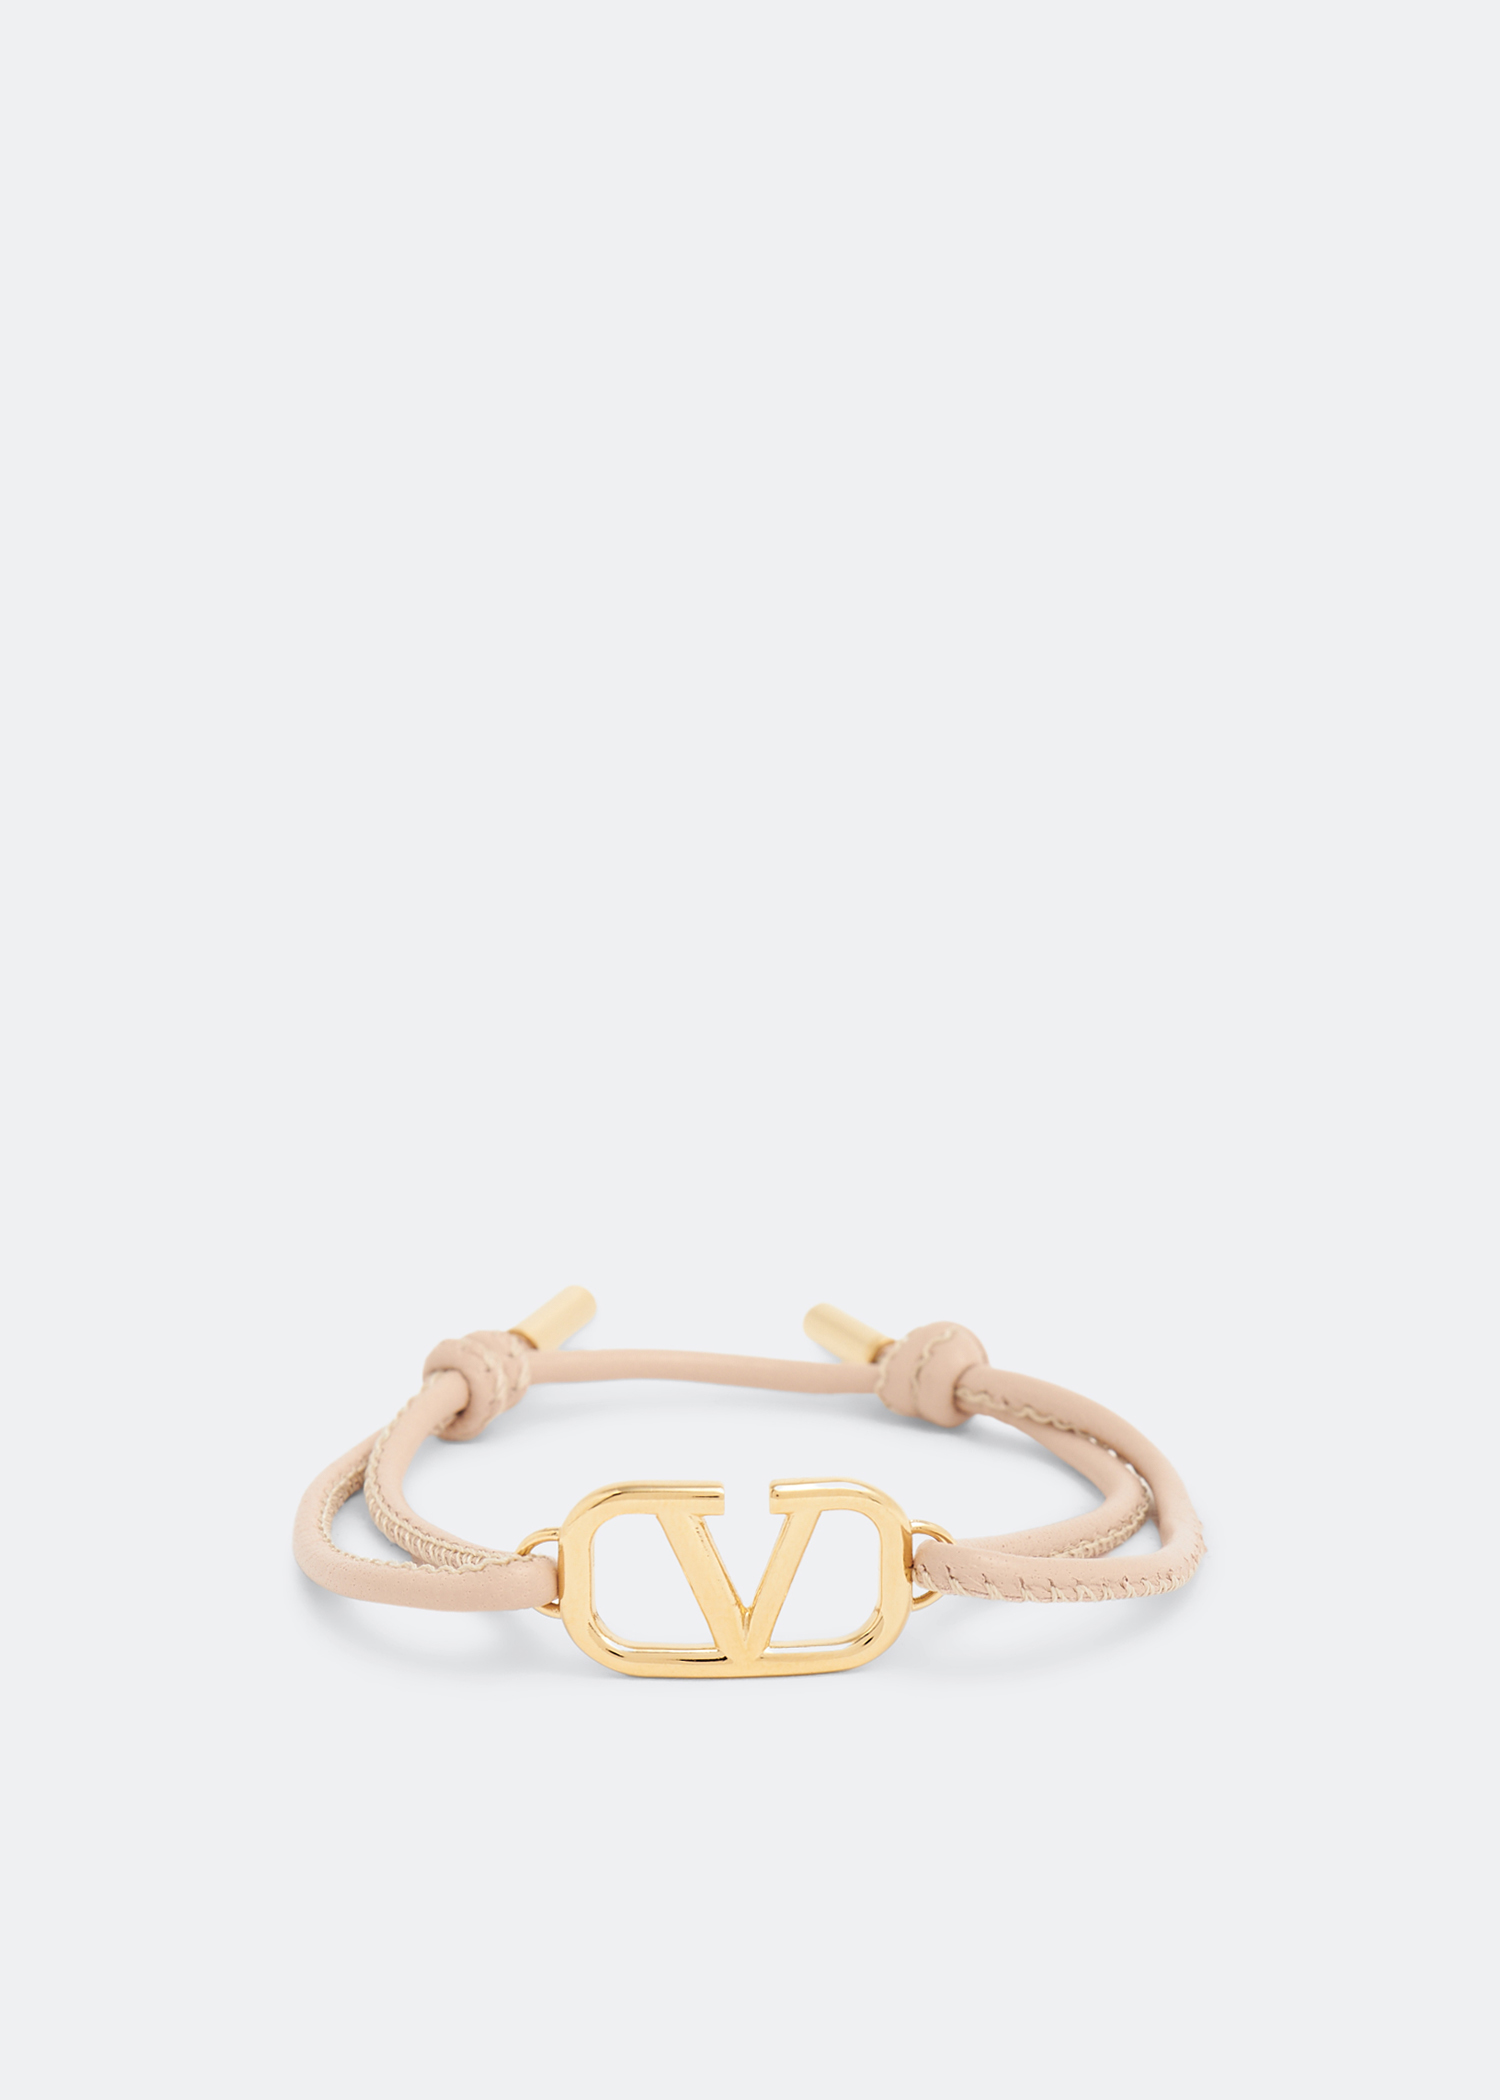 Bracelet Valentino Garavani Gold in Metal - 39198541